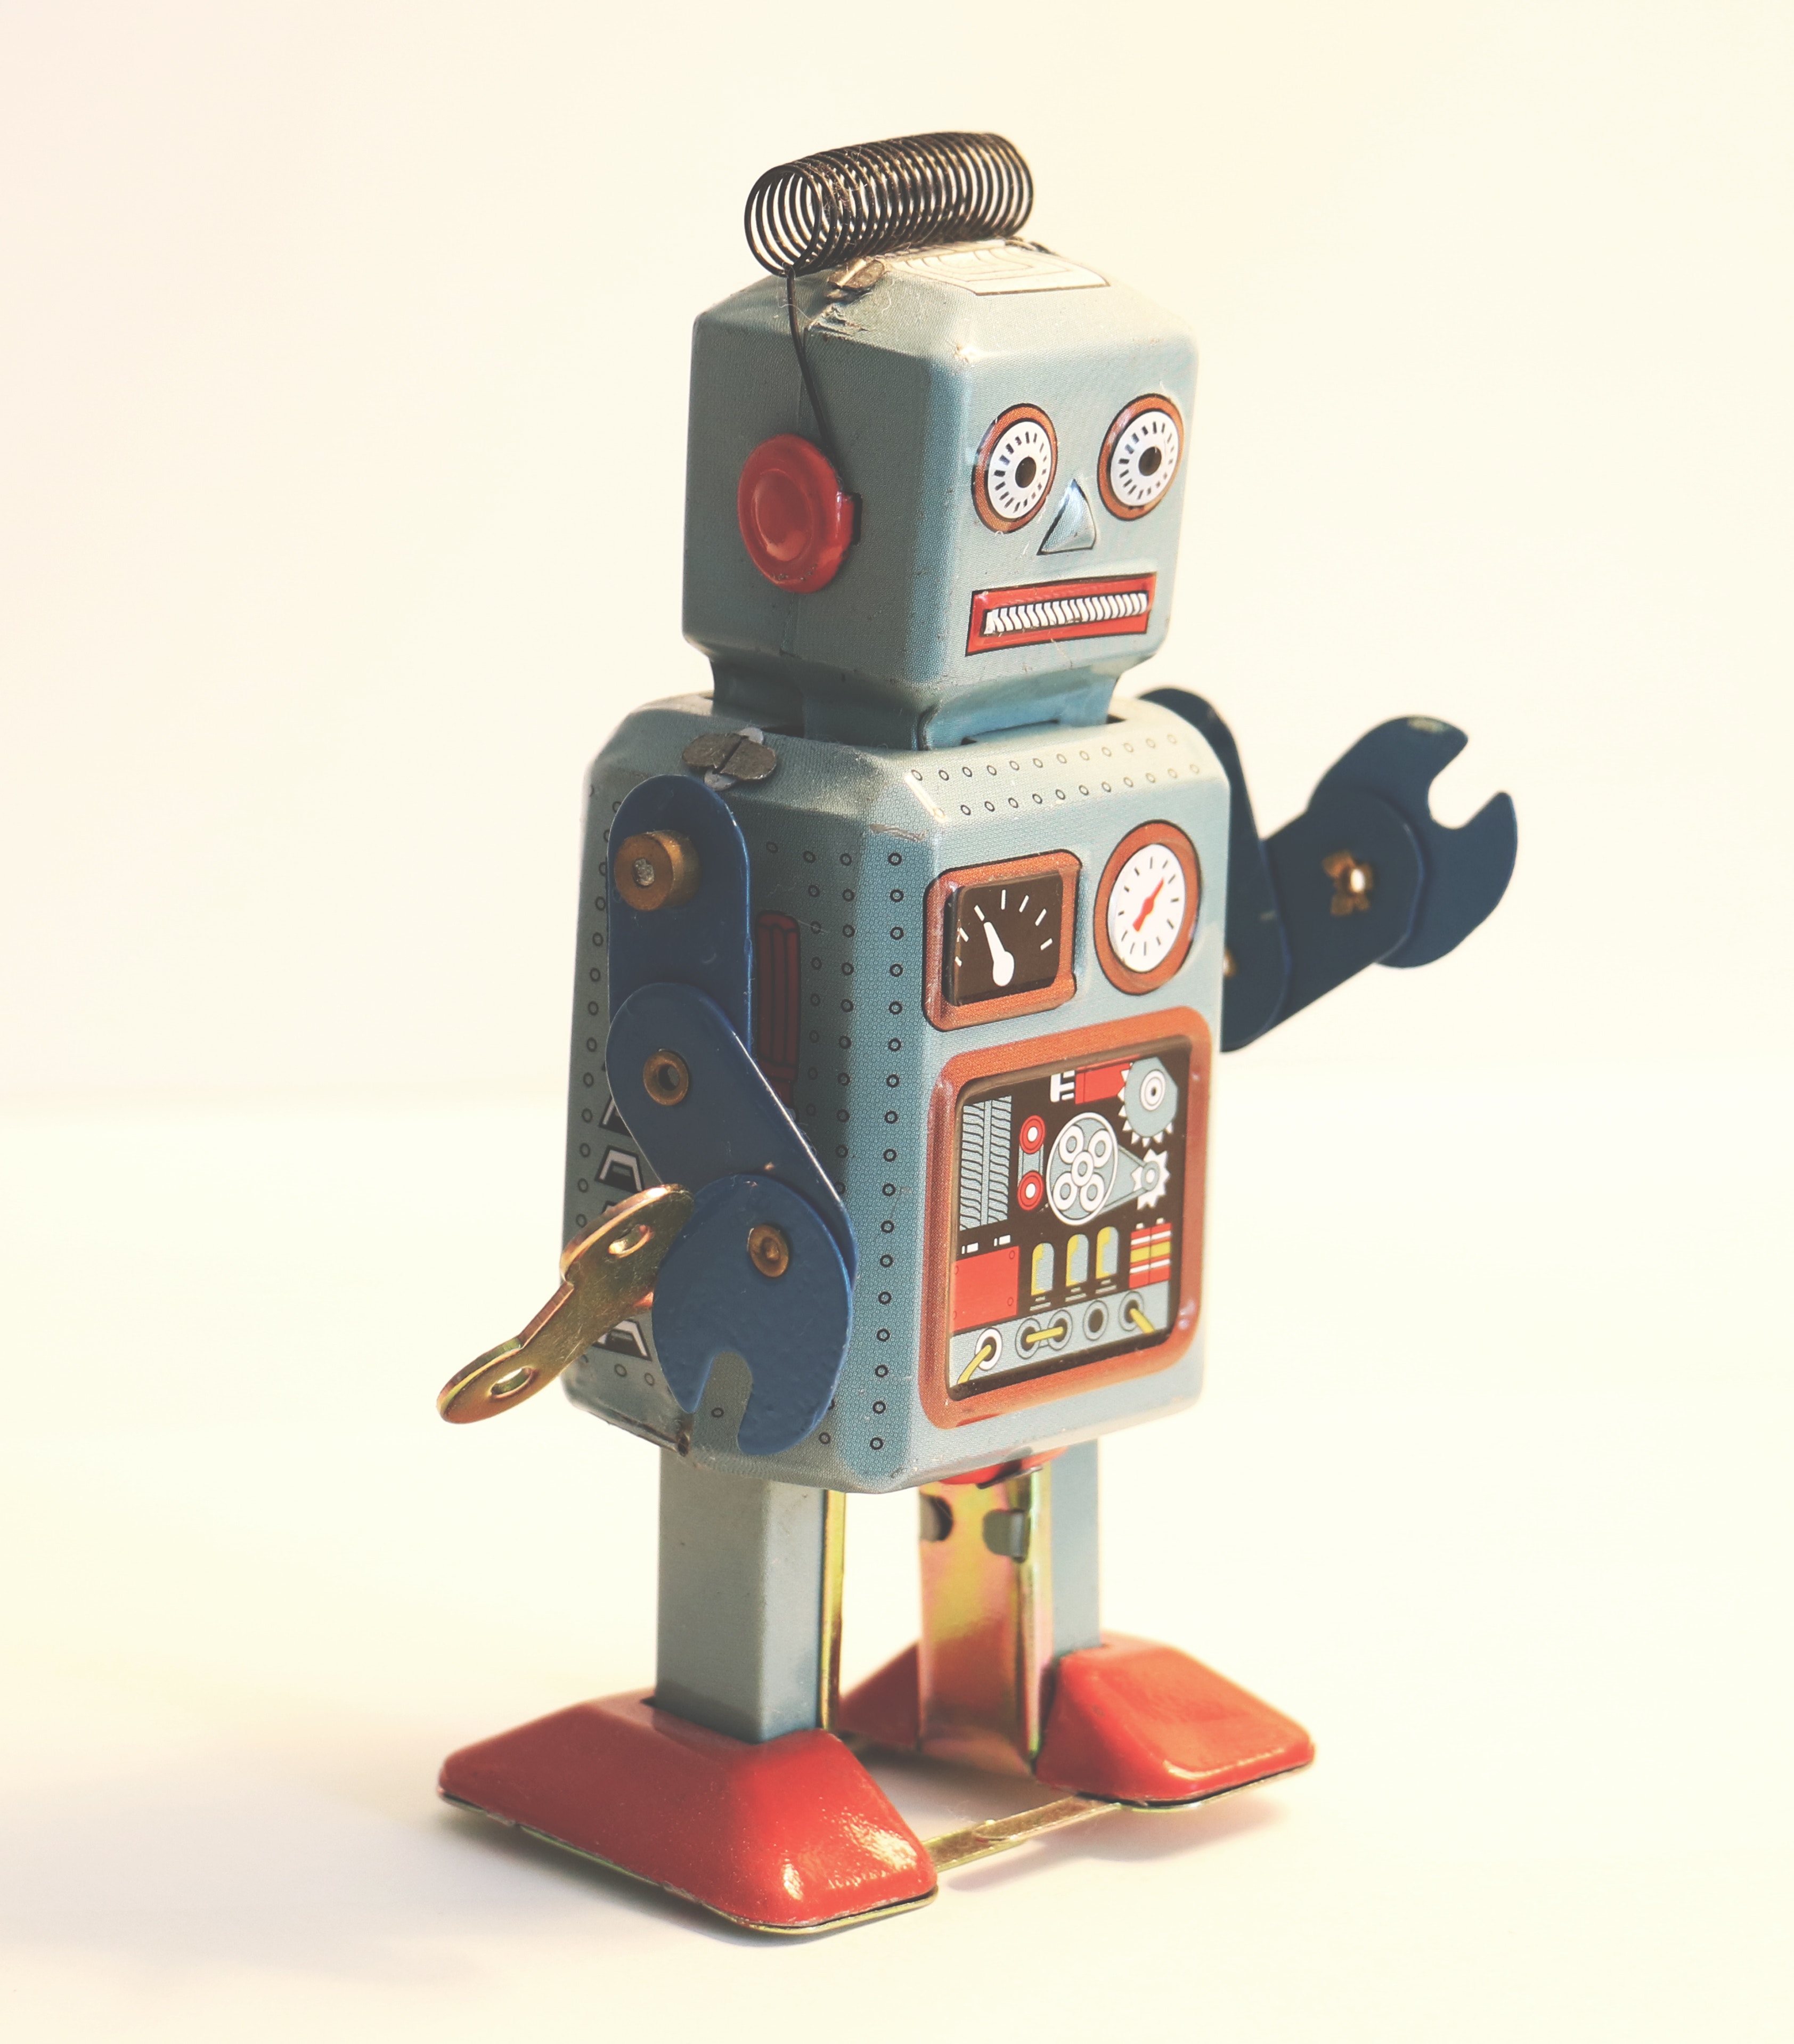 Ein grauer Roboter mit roten Füßen und einem Schraubenschlüssel als Hand.